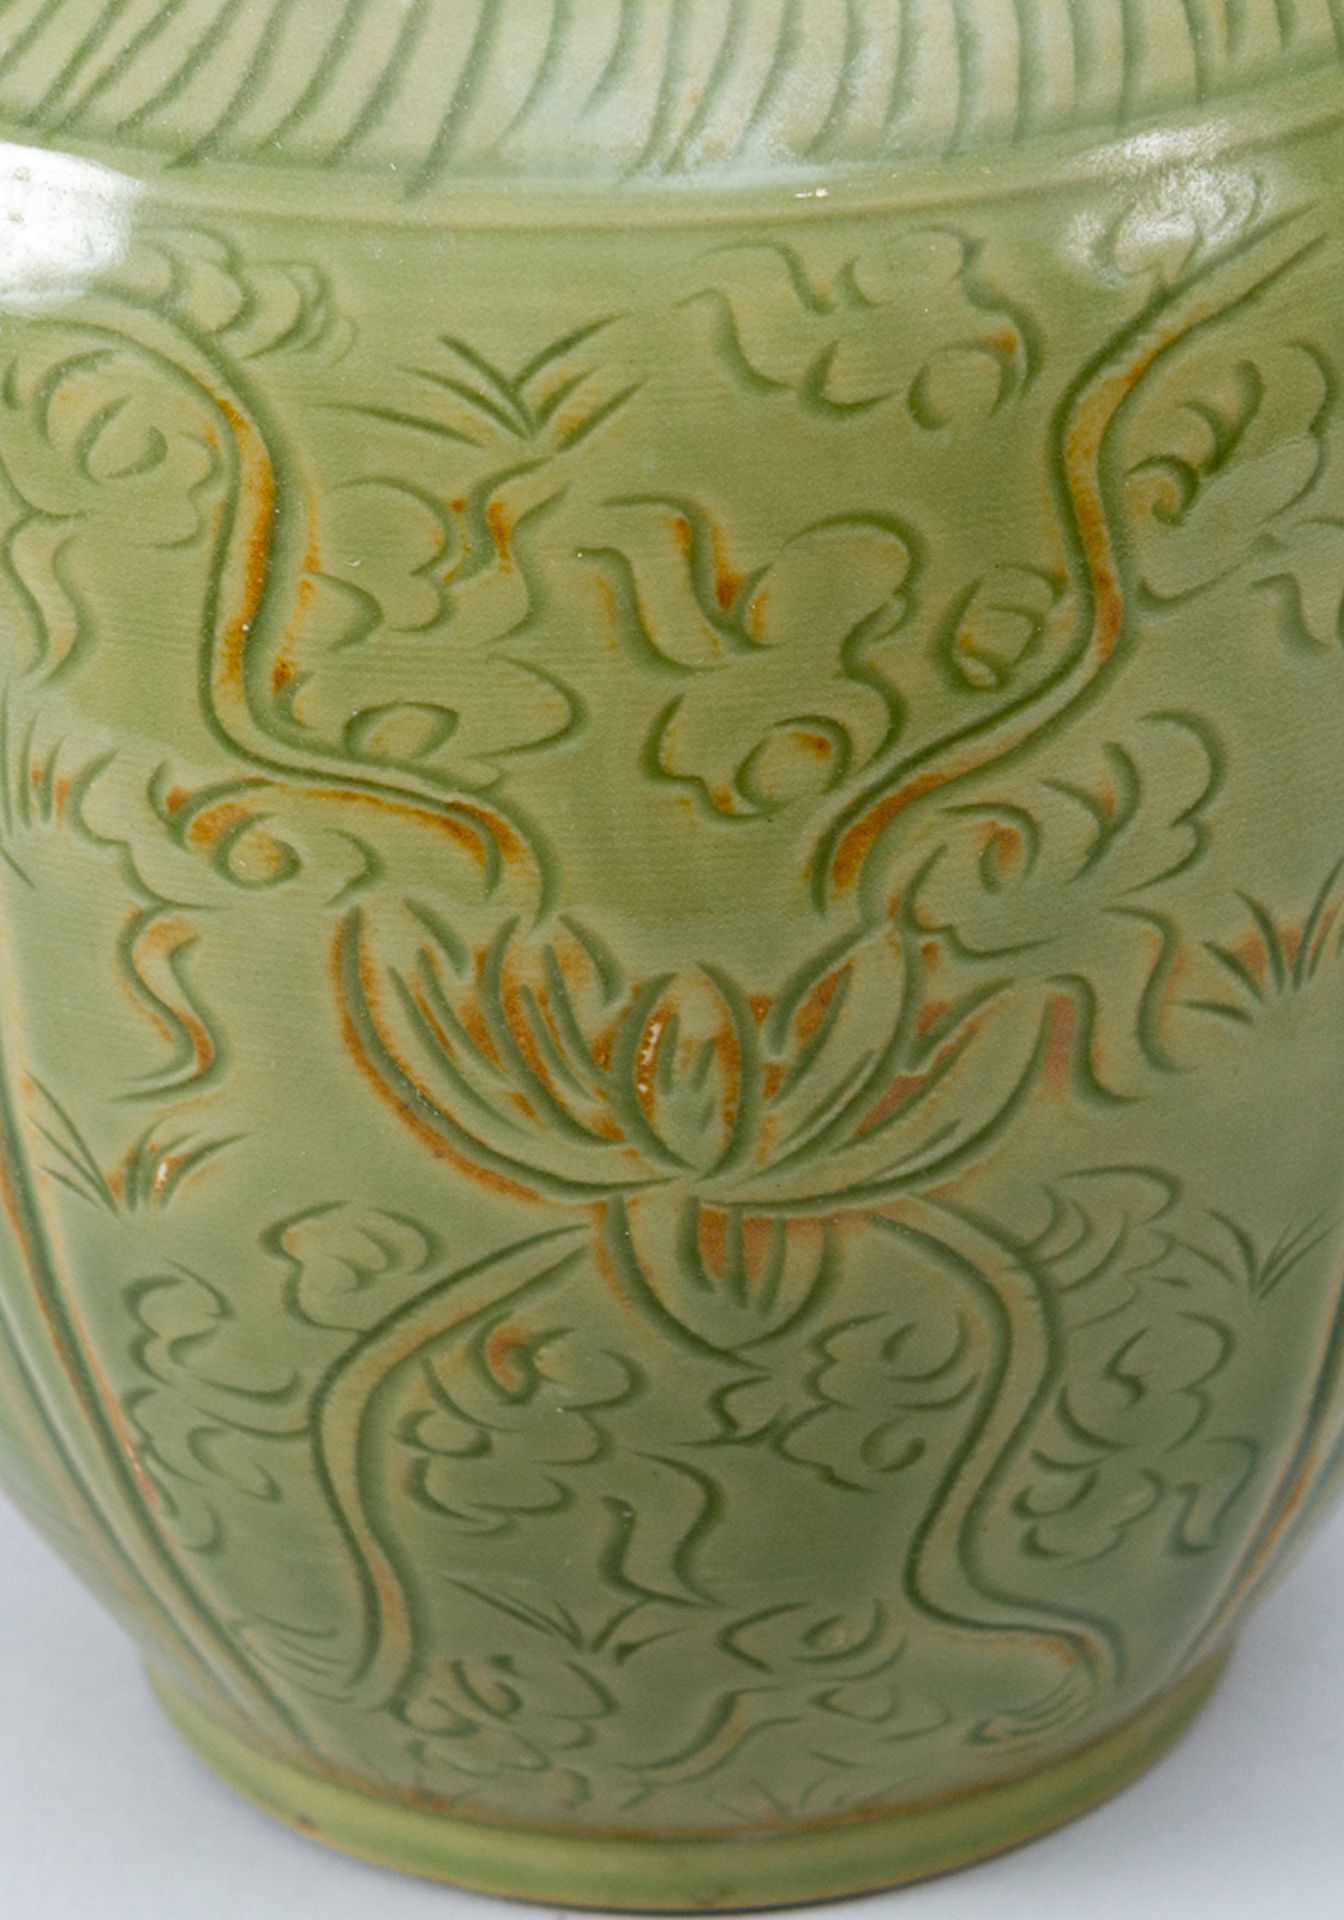 Chinese Porcelain Vase - Image 3 of 3